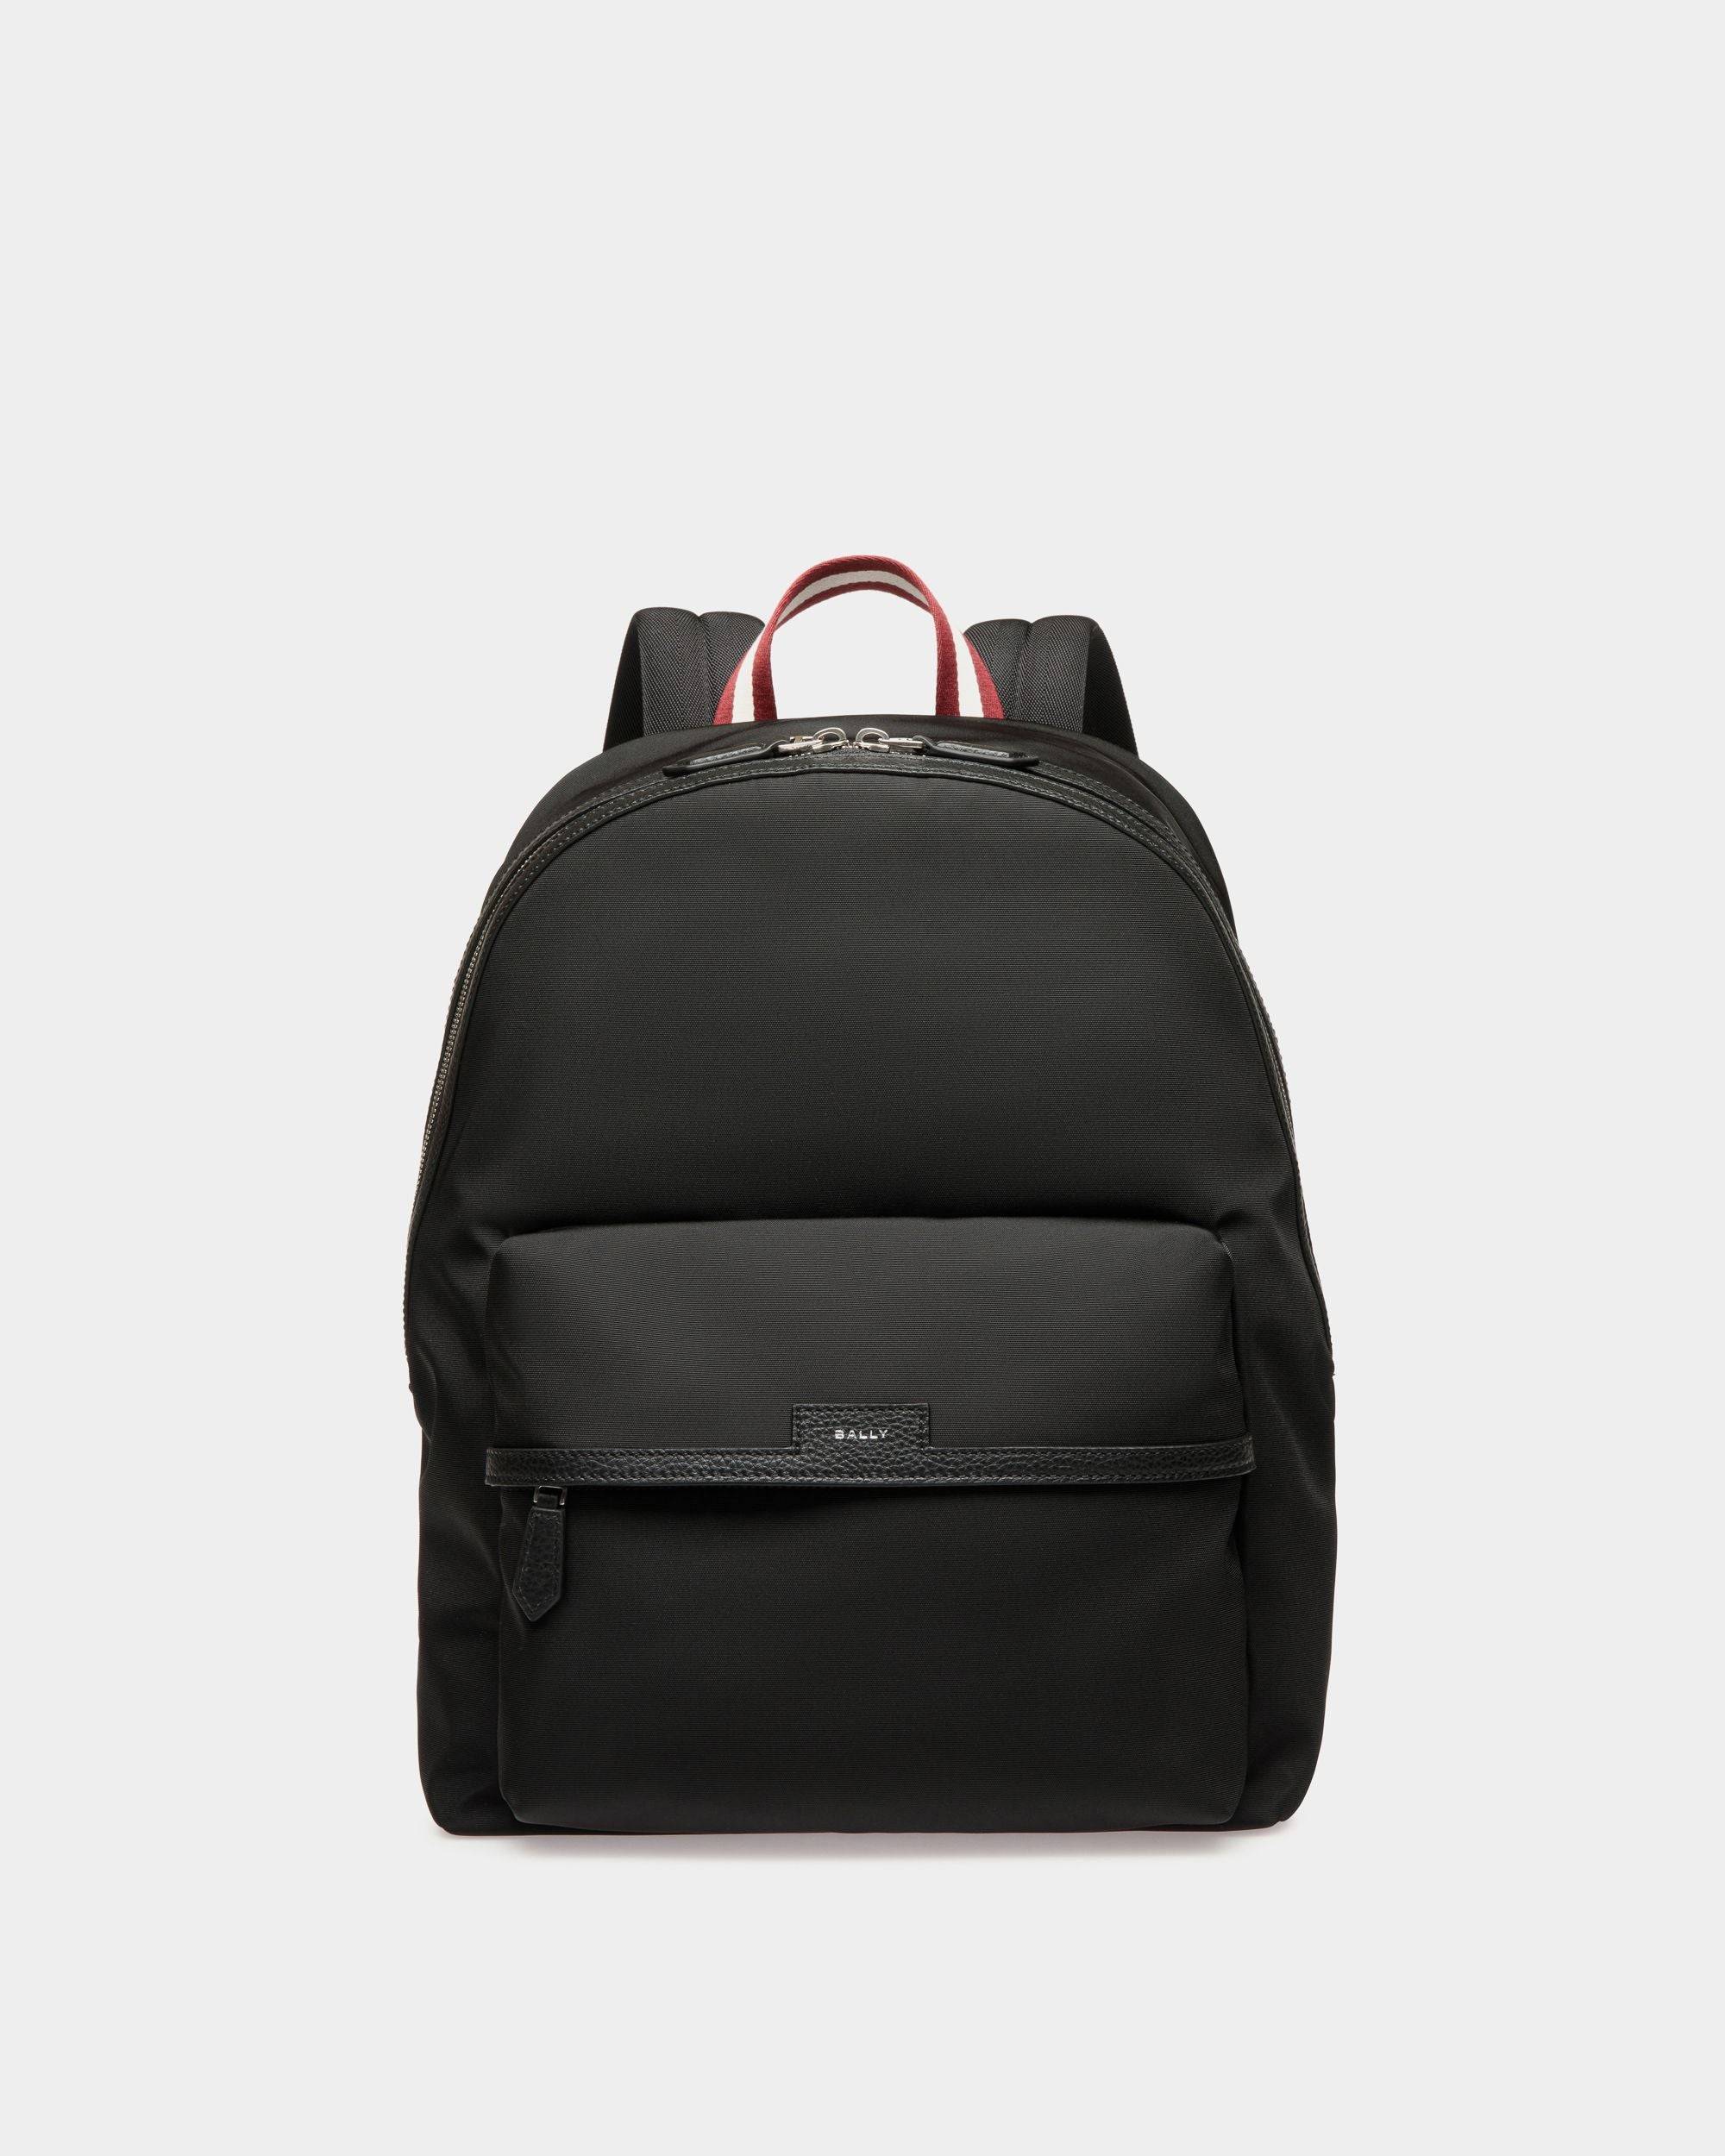 Code Backpack in Black Nylon - Men's - Bally - 01